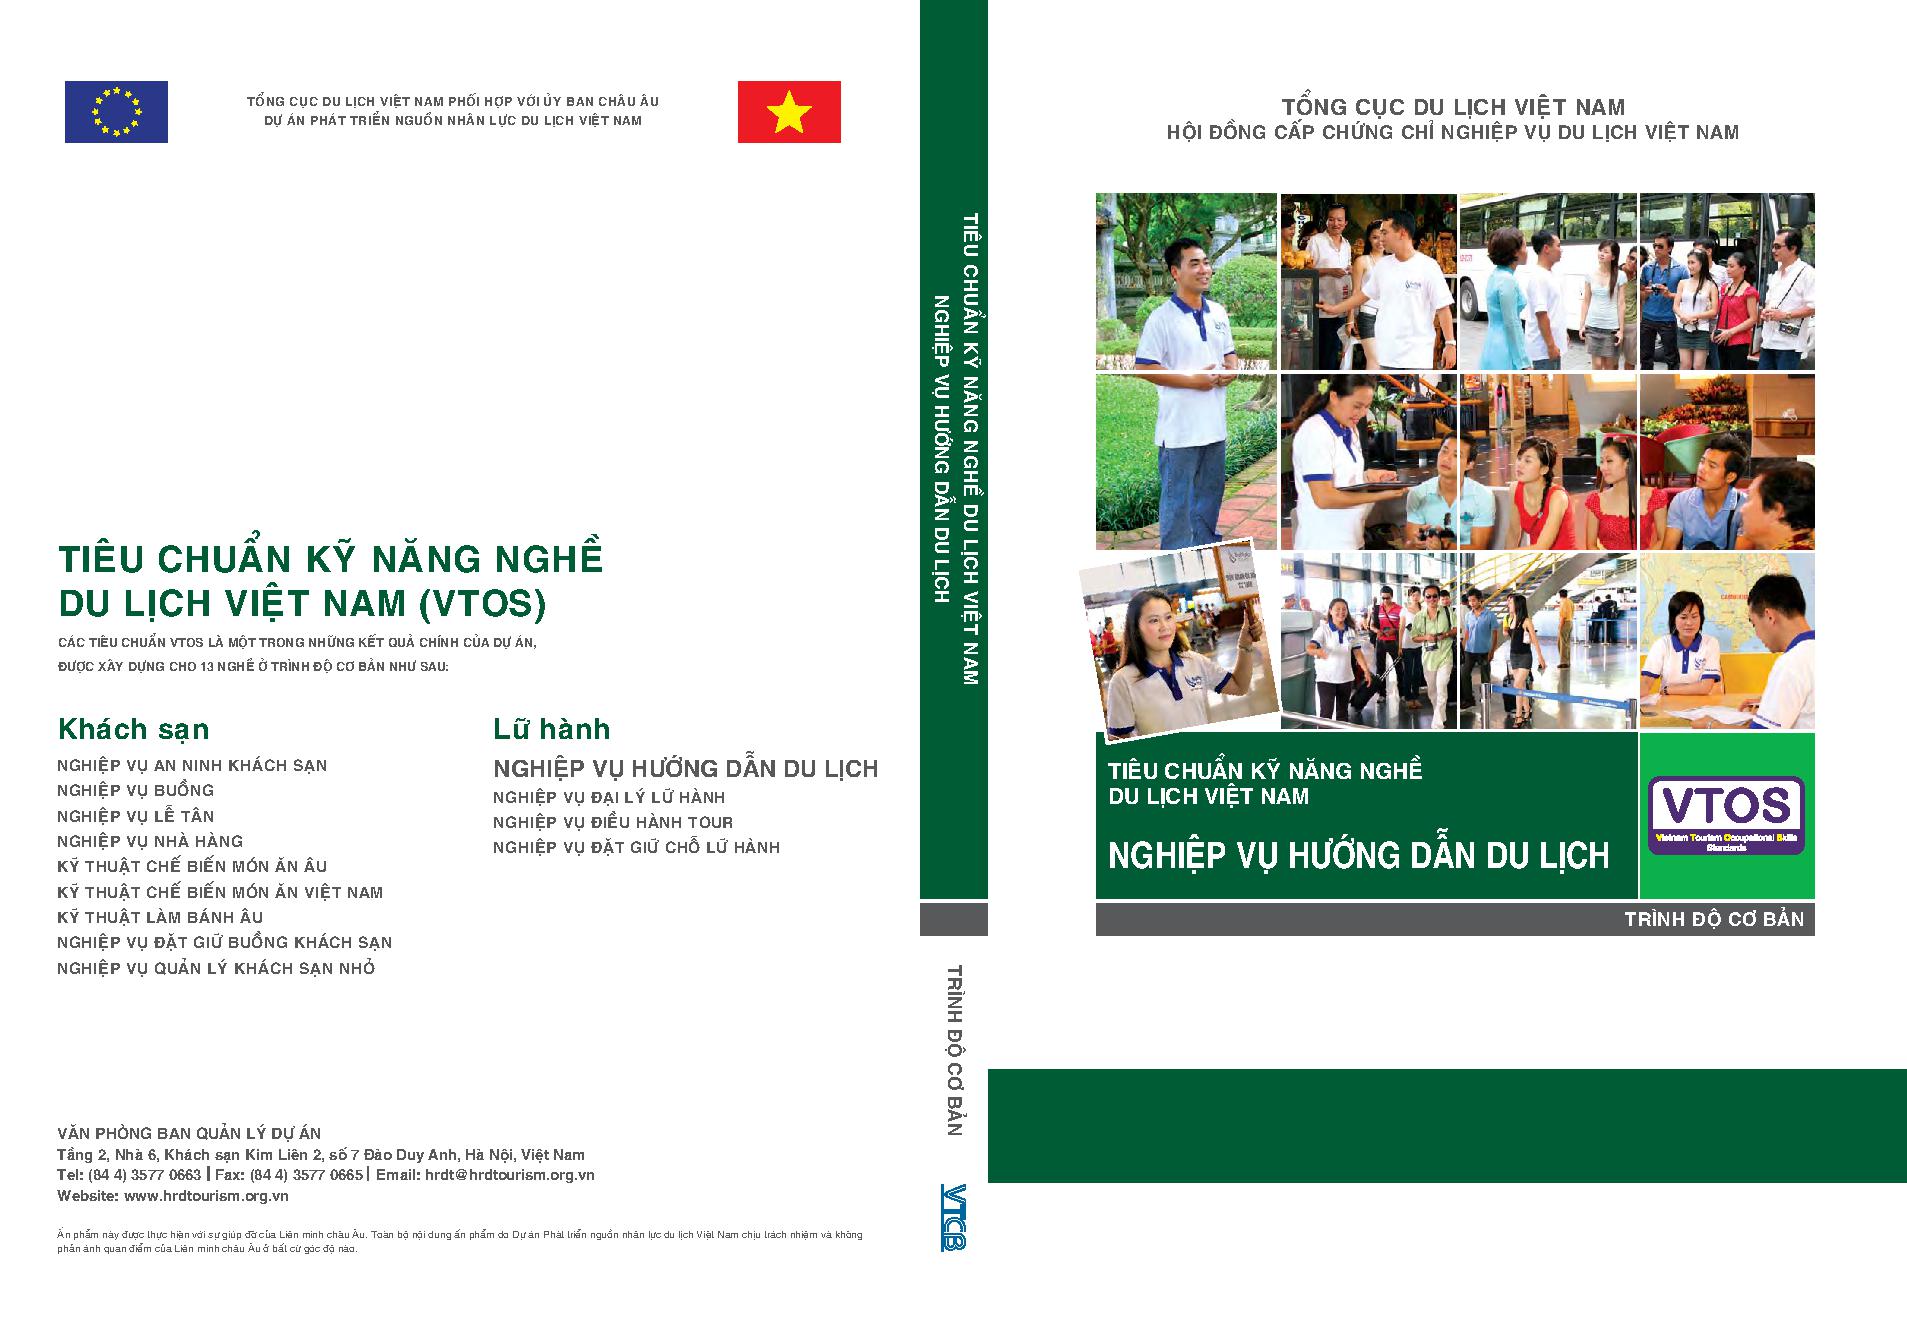 Tiêu chuẩn kỹ năng nghề nghiệp du lịch Việt Nam : Nghiệp vụ hướng dẫn du lịch